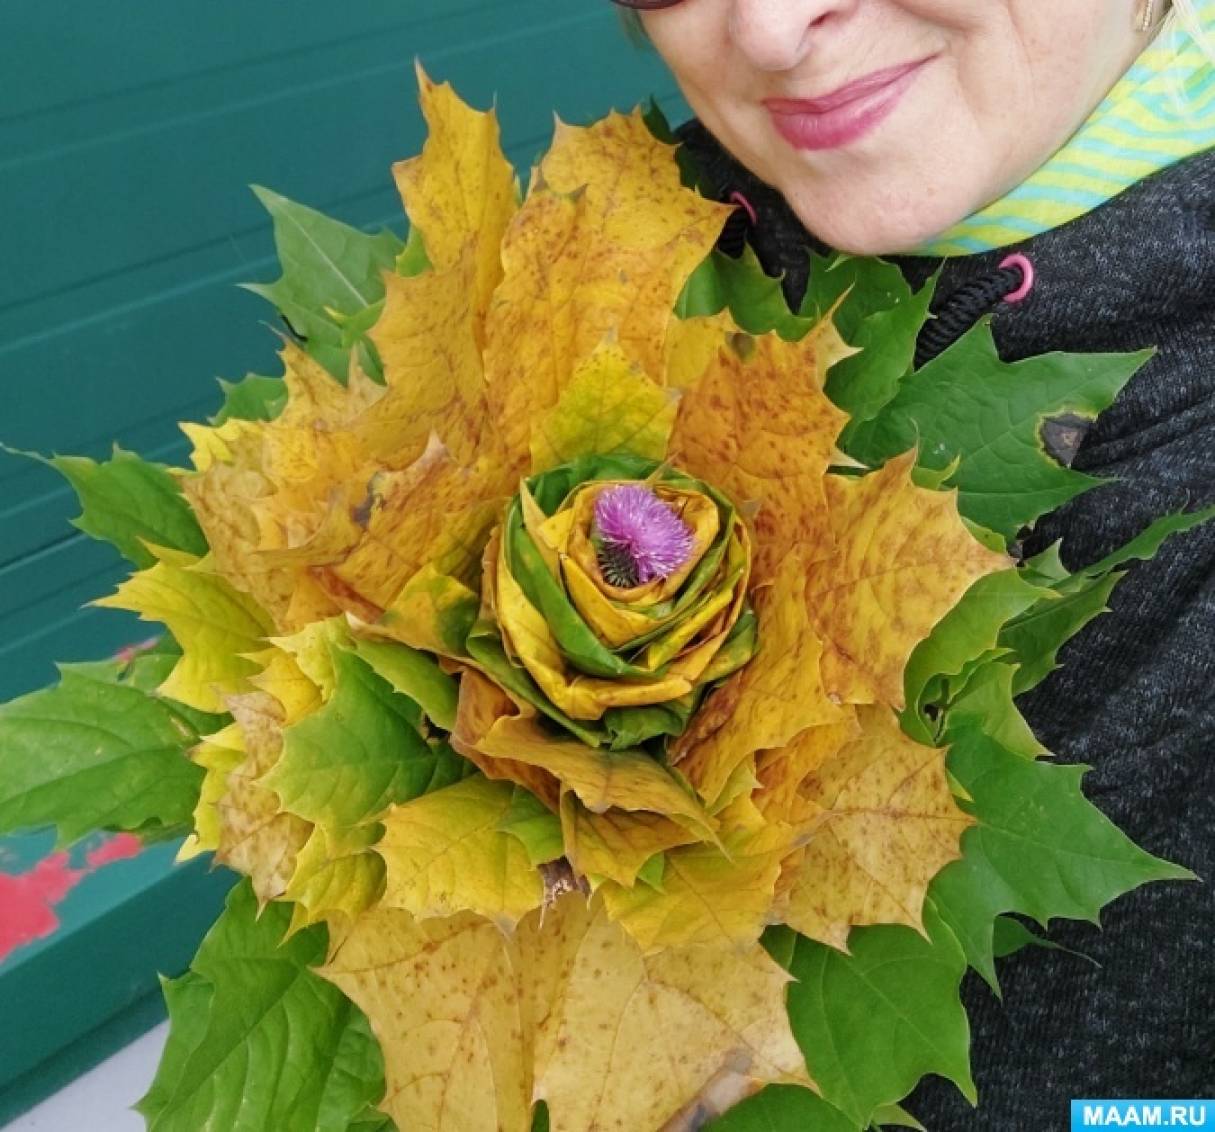 Как делают поделки - розы из листьев: пошаговая инструкция с фотографиями